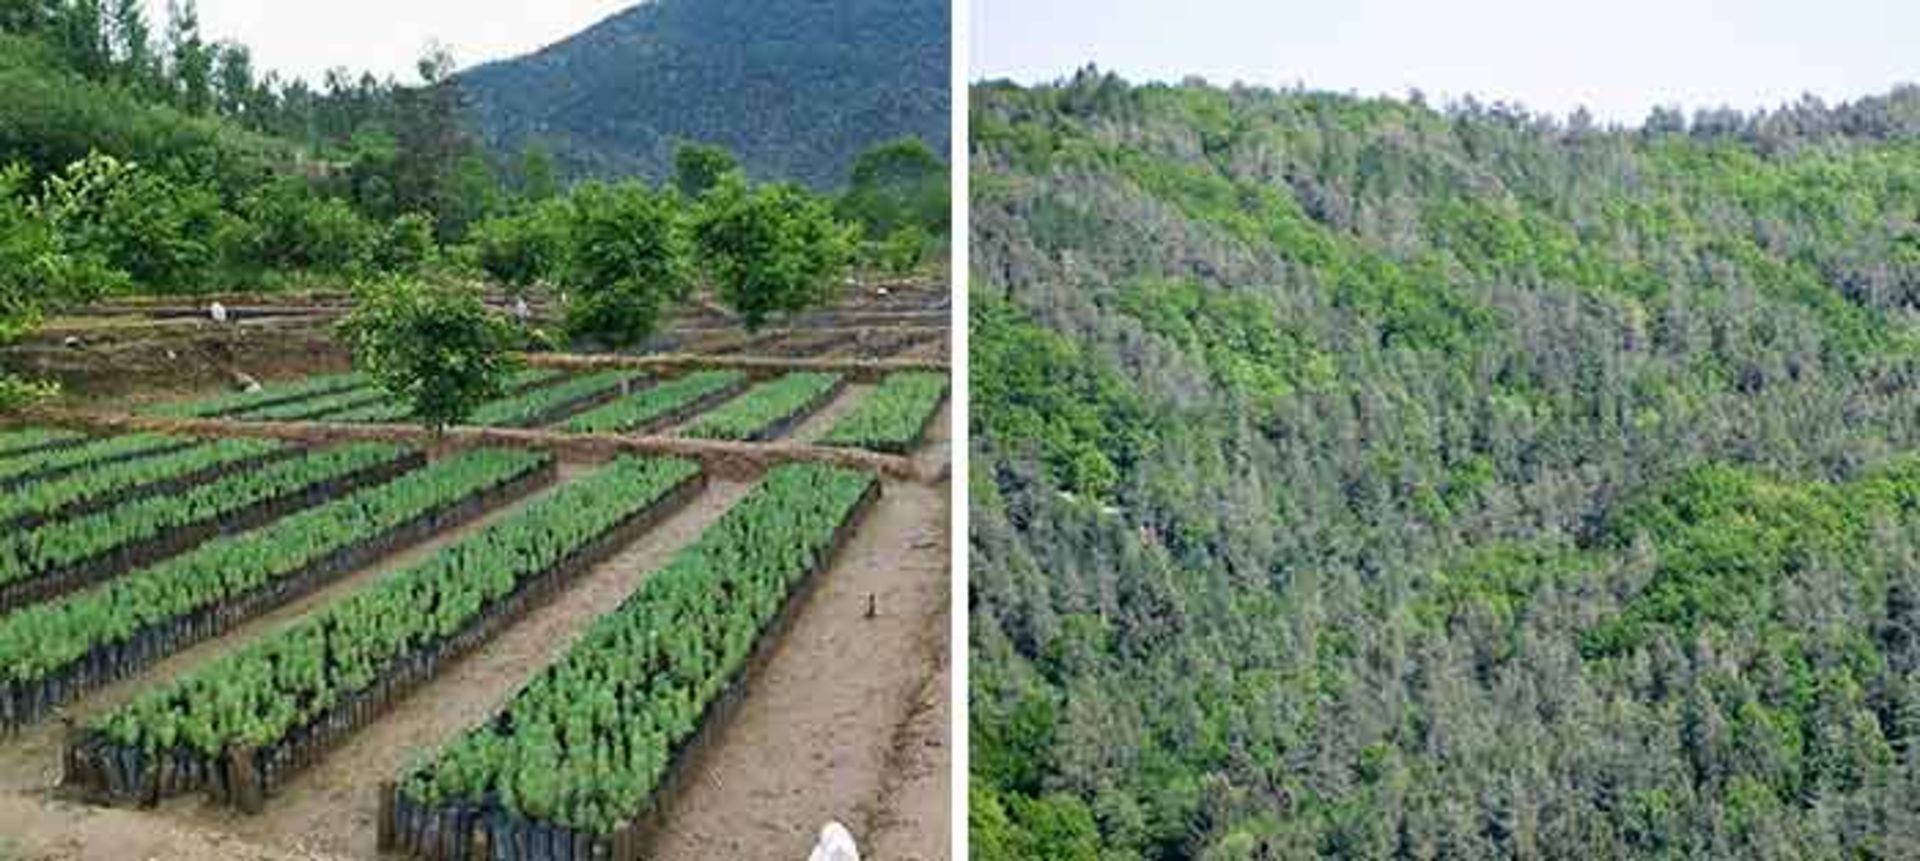 مرجع متخصصين ايران ۸. پاكستان ۱ ميليارد درخت مي‌كارد و مي‌خواهد در عرض پنج ساله آينده ۱۰ ميليارد درخت بكارد